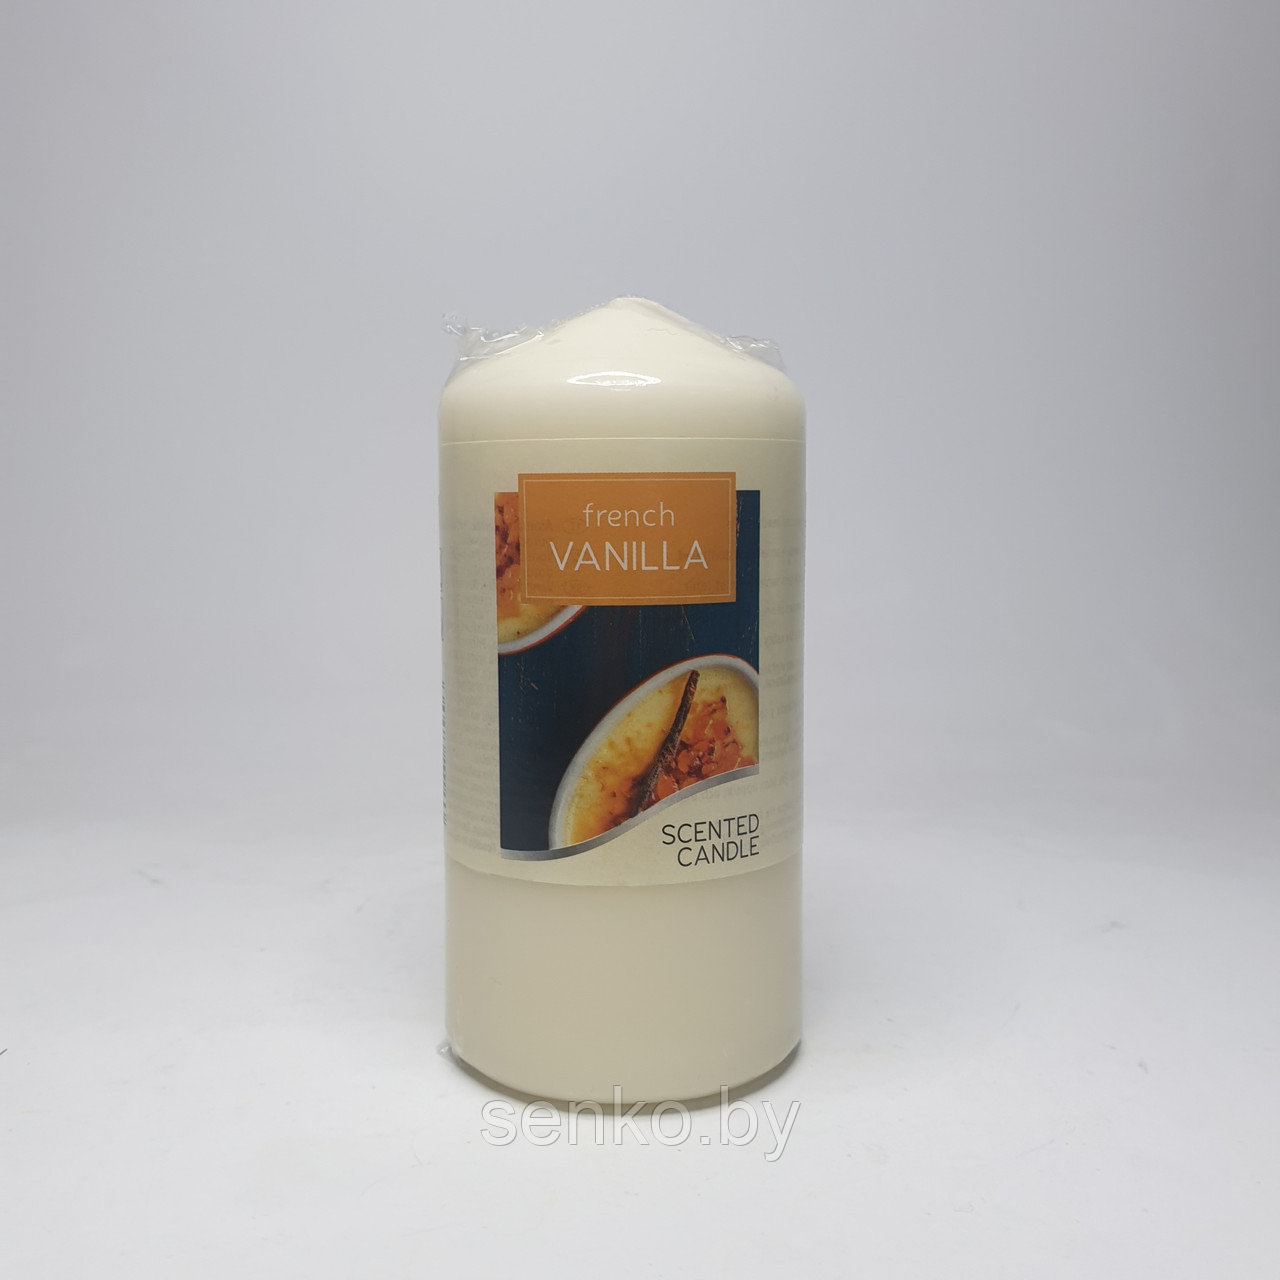 Ароматические свеча столбик "Французская ваниль" 120/60 мм